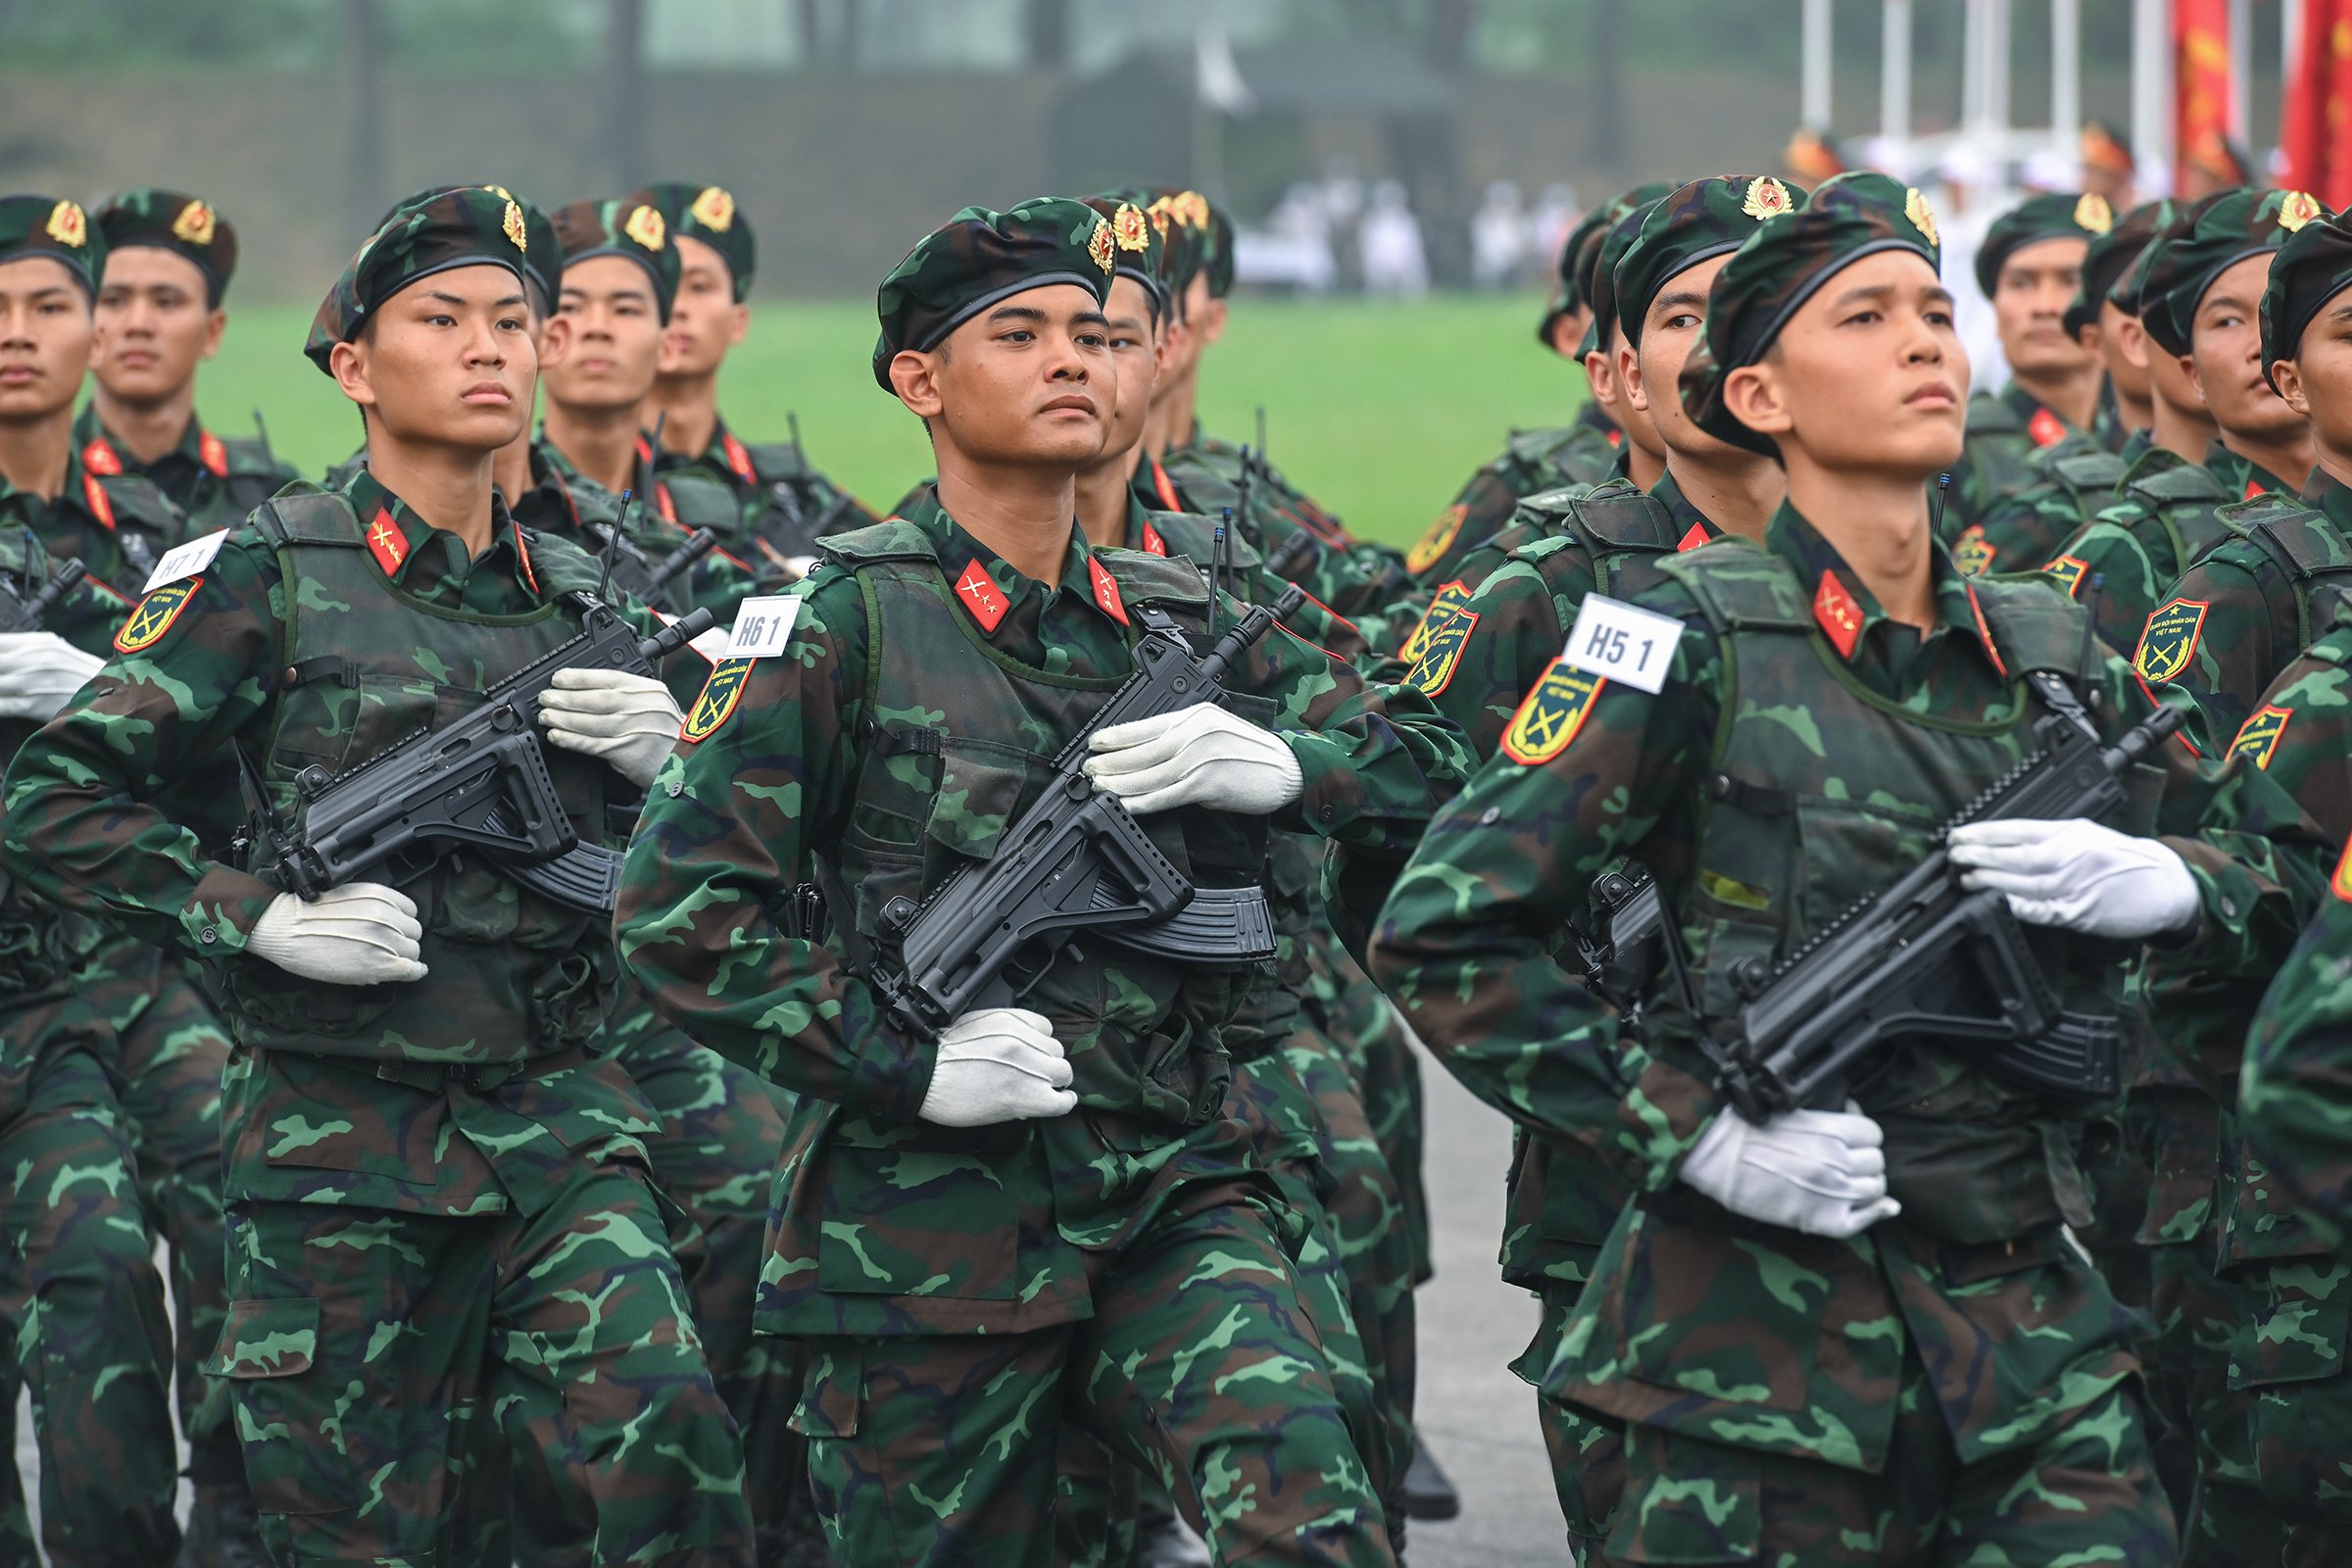 Lễ diễu binh oai hùng và đầy tự hào của 12.000 người - những hình ảnh đi vào lịch sử ở Điện Biên Phủ- Ảnh 50.